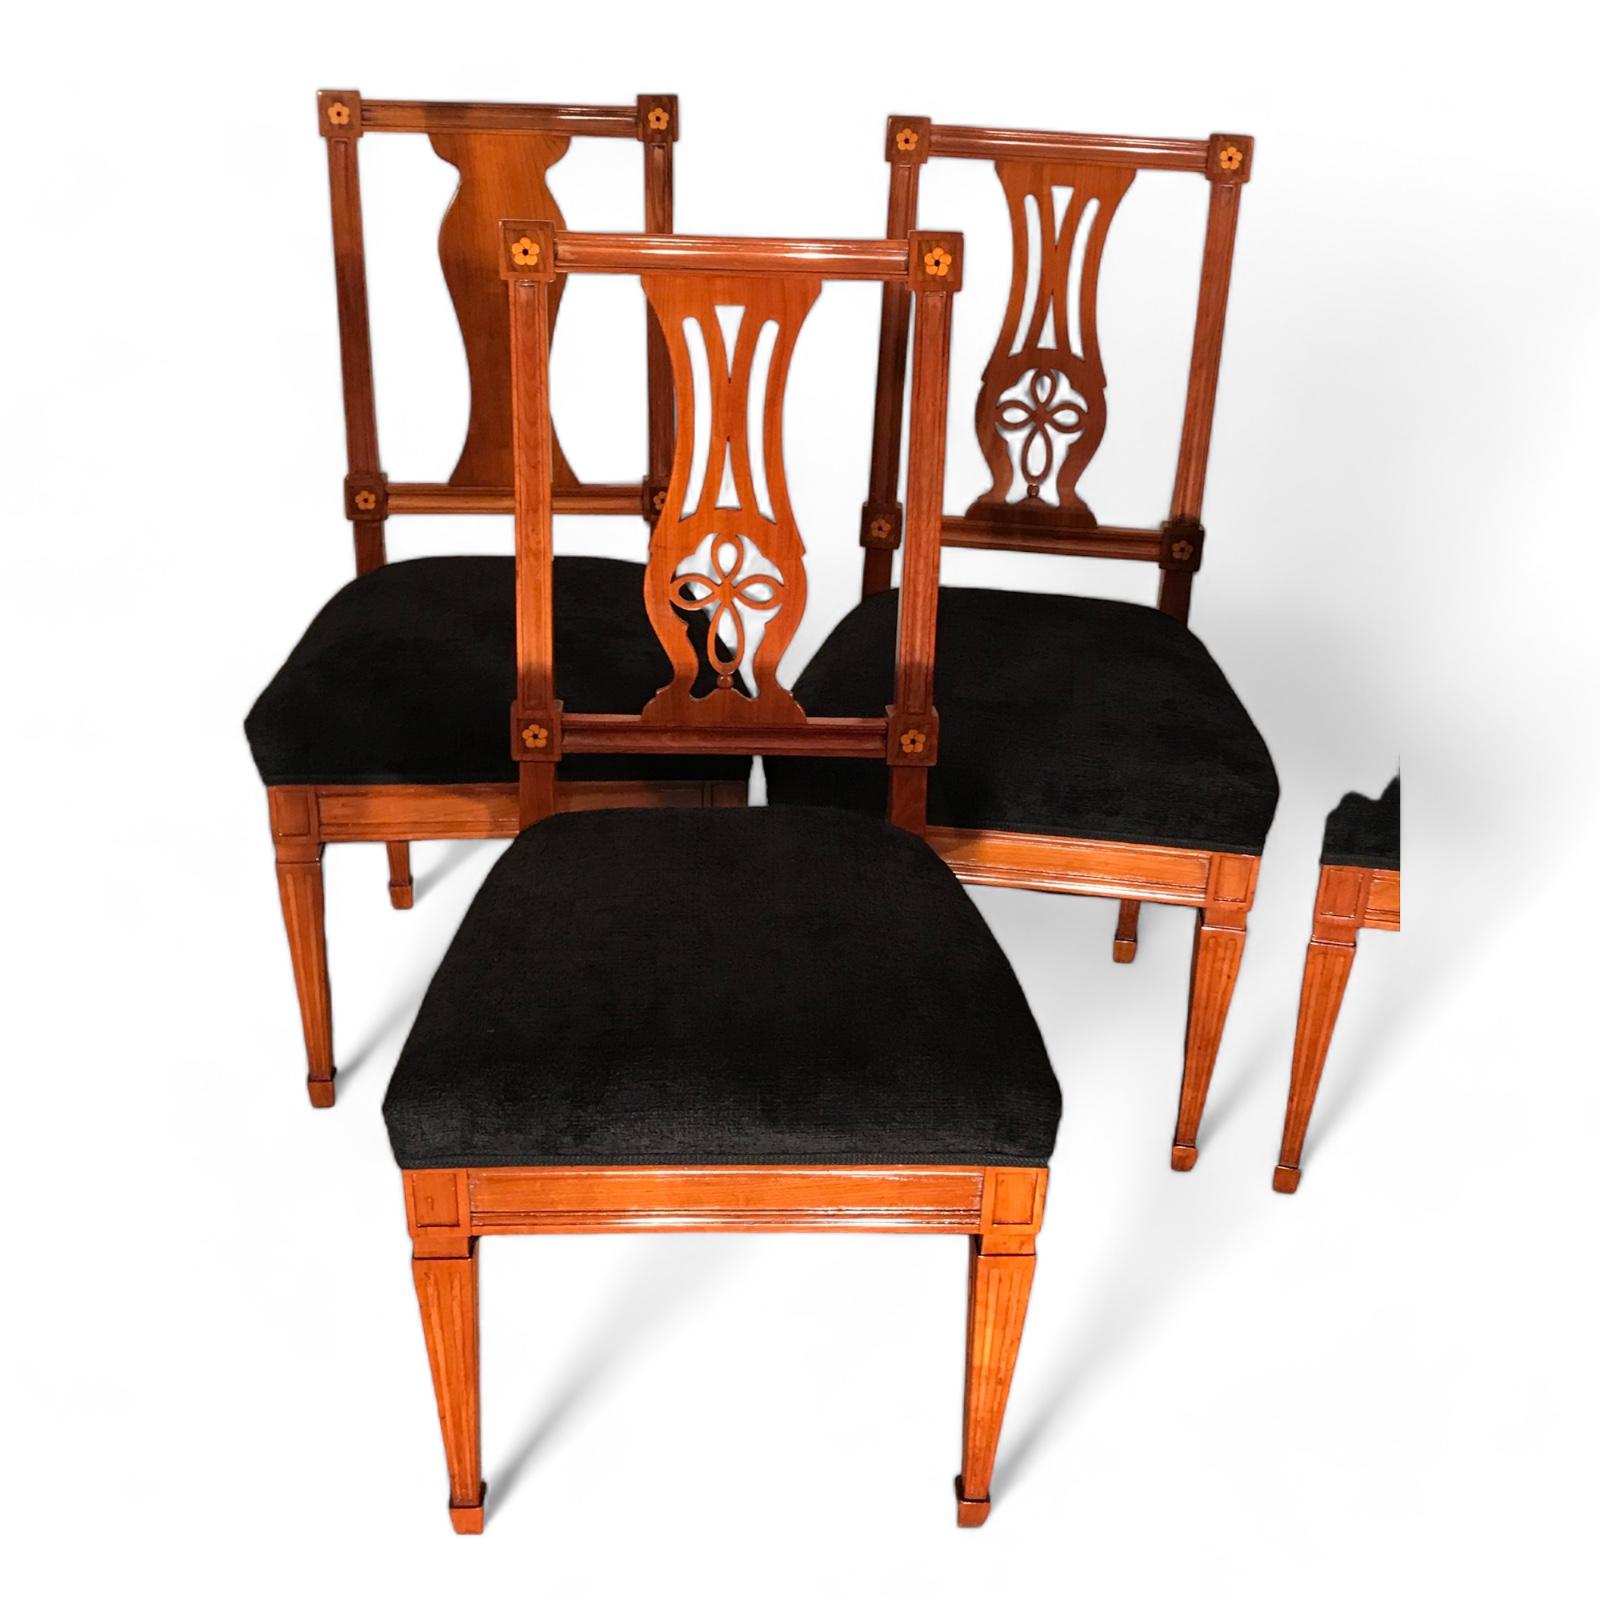 Satz von sechs neoklassischen Stühlen
Entdecken Sie einen seltenen Fund mit unserem exquisiten Set von sechs klassizistischen Stühlen, die um 1800 in Süddeutschland entstanden sind. Die Stühle aus Kirschbaumfurnier mit kunstvoll eingelegtem